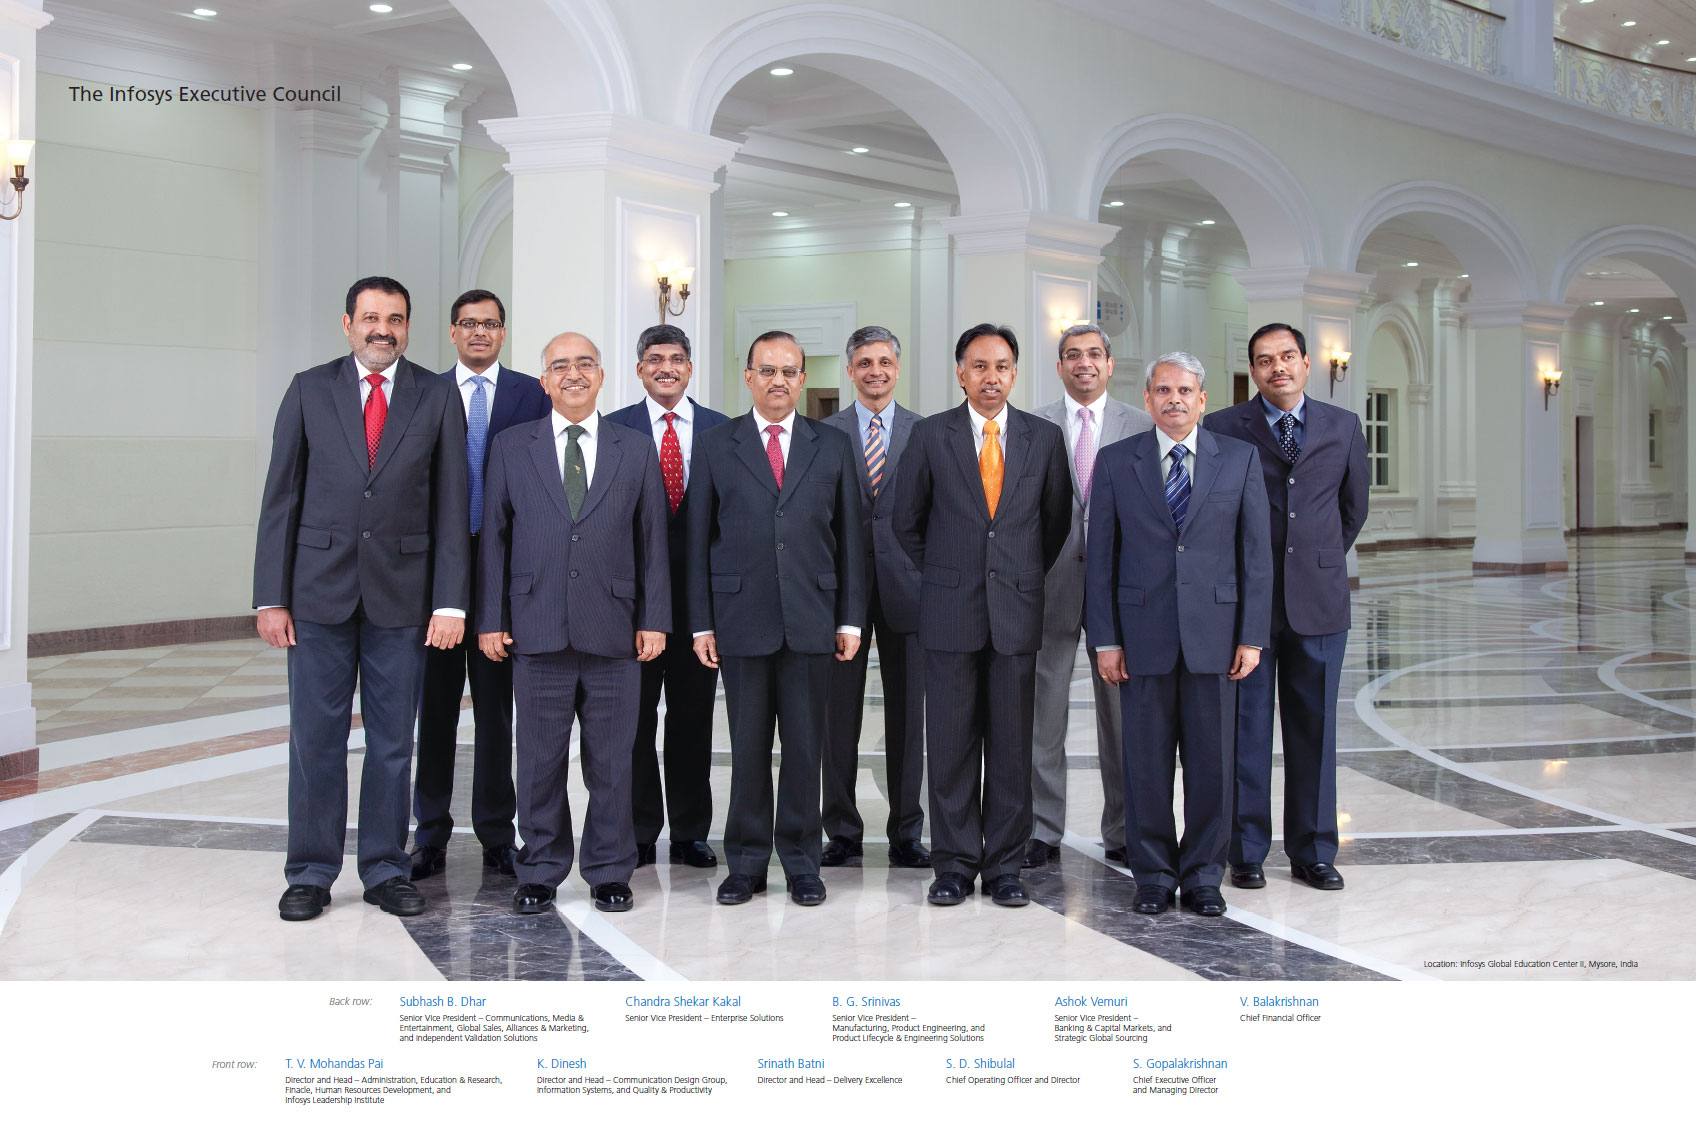 The Infosys Executive Council